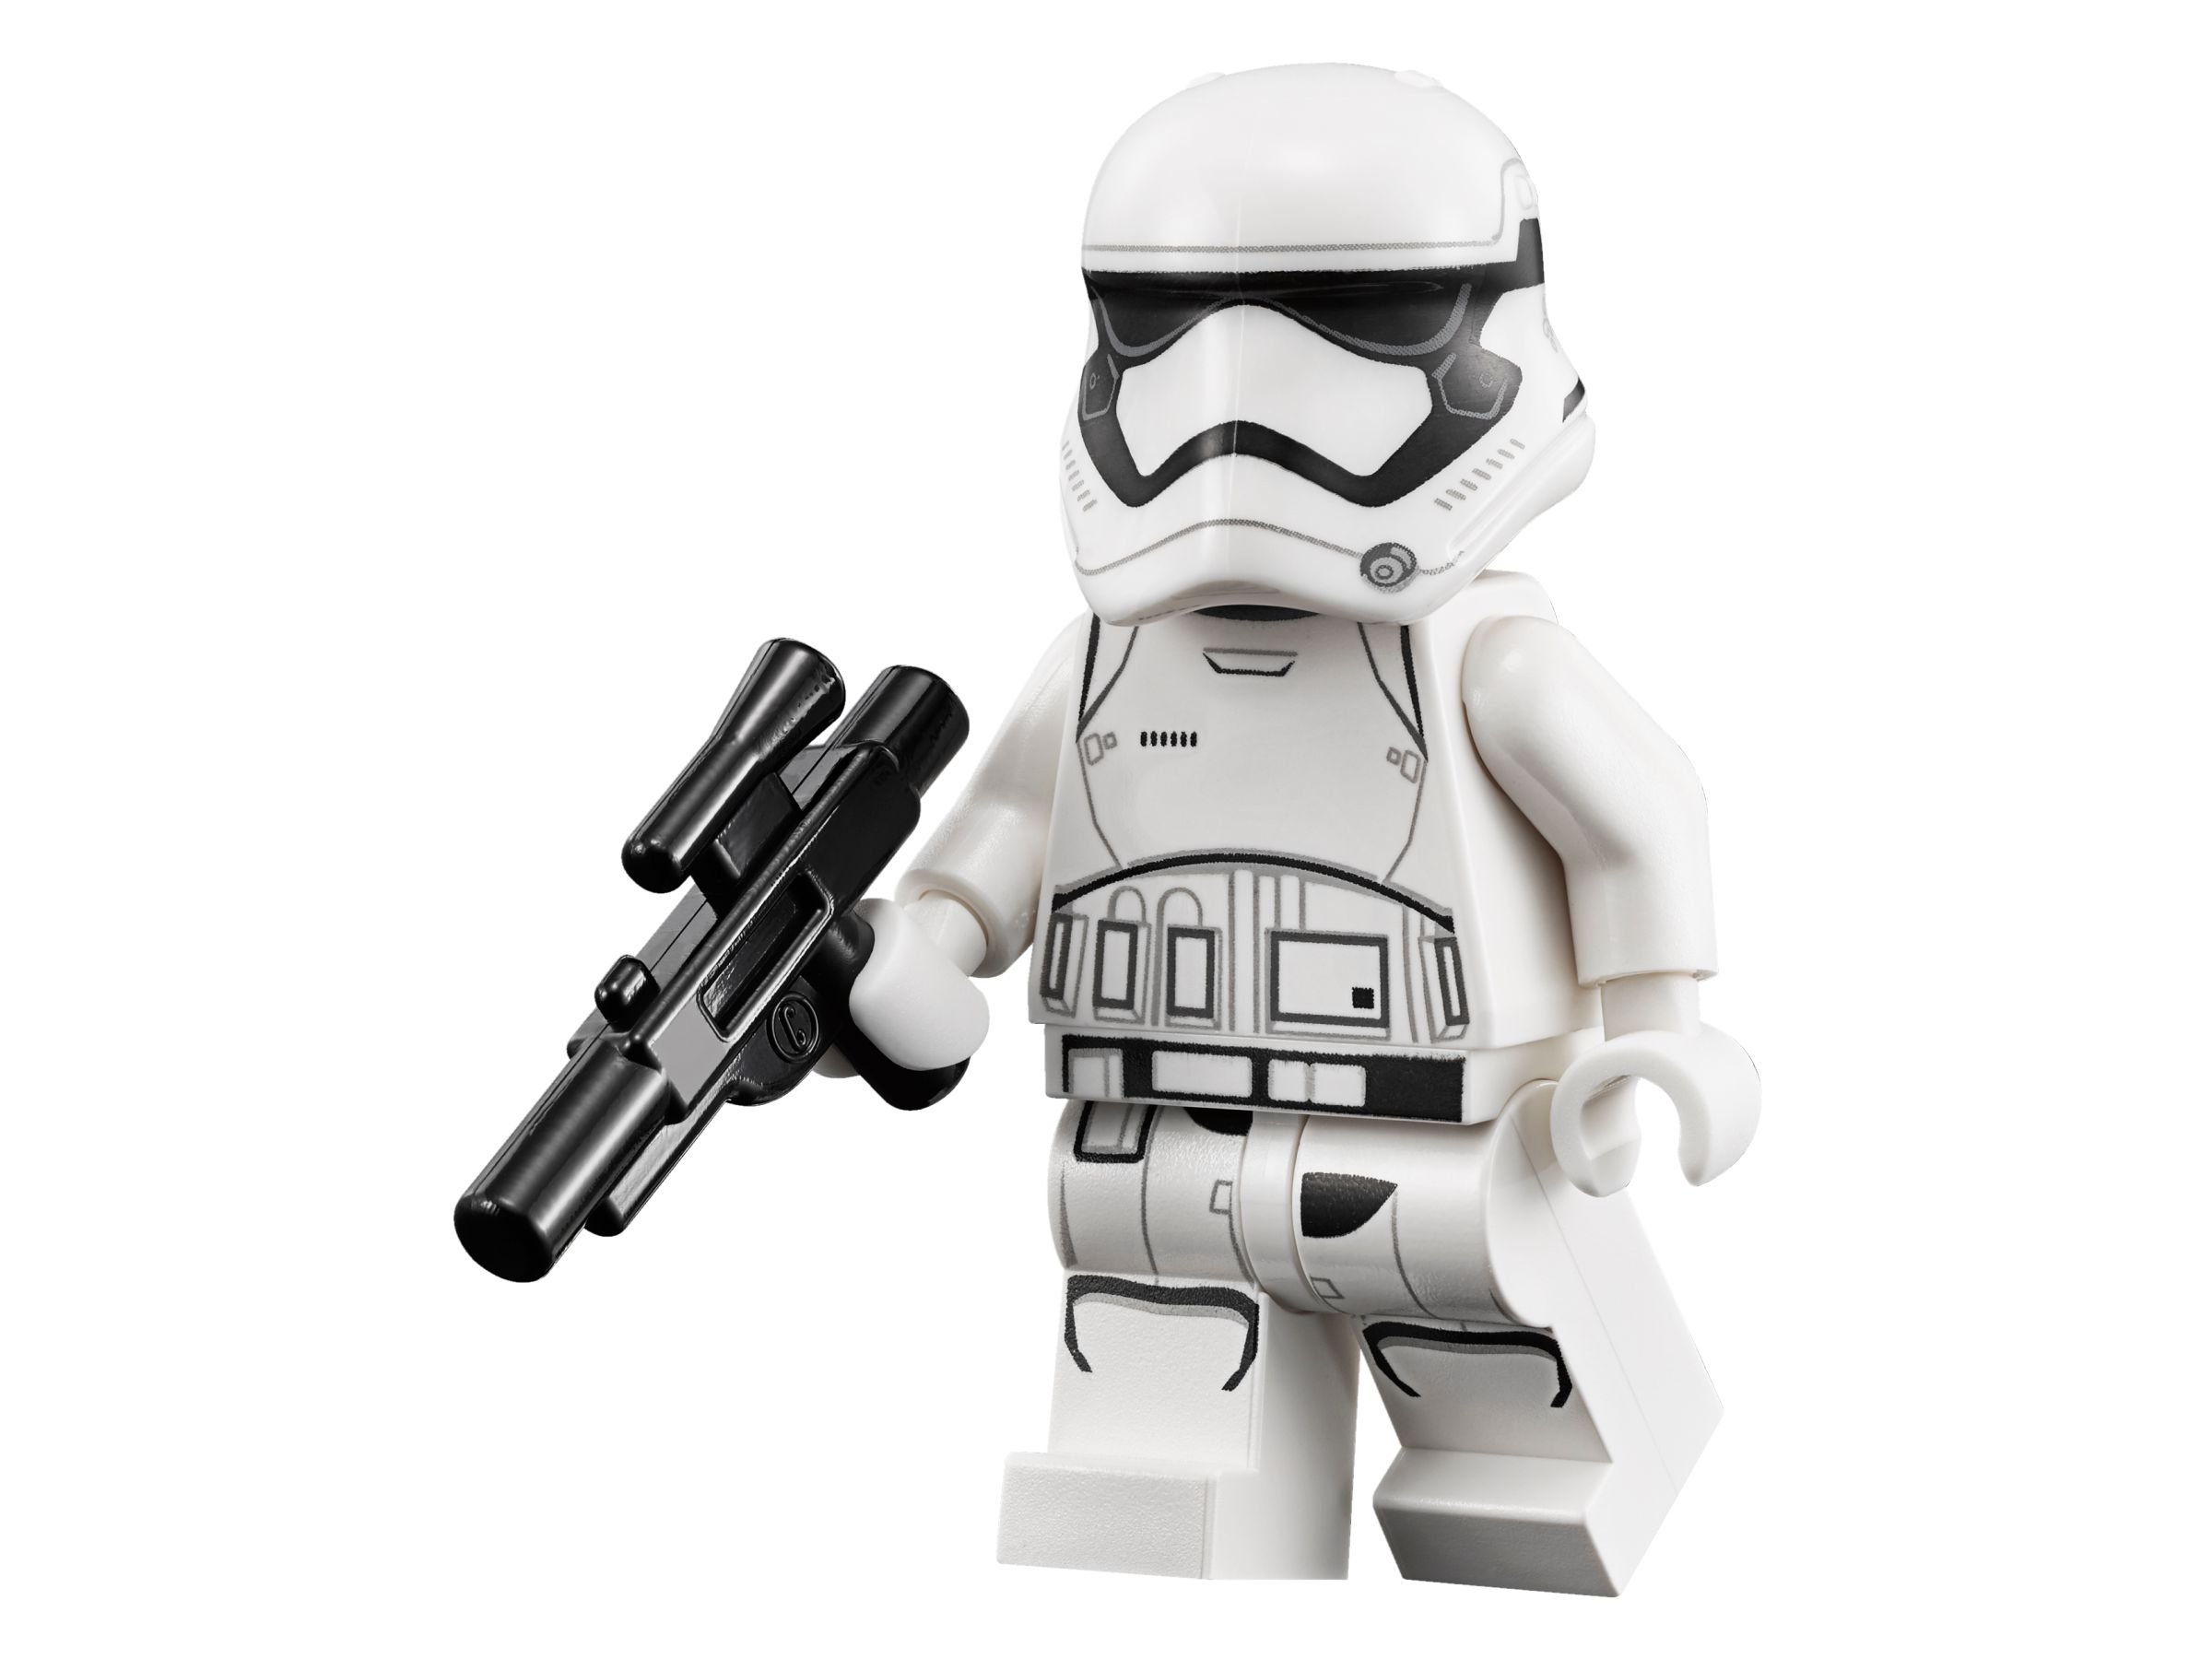 LEGO Star Wars 75139 Schlacht auf Takodana LEGO_75139_alt10.jpg